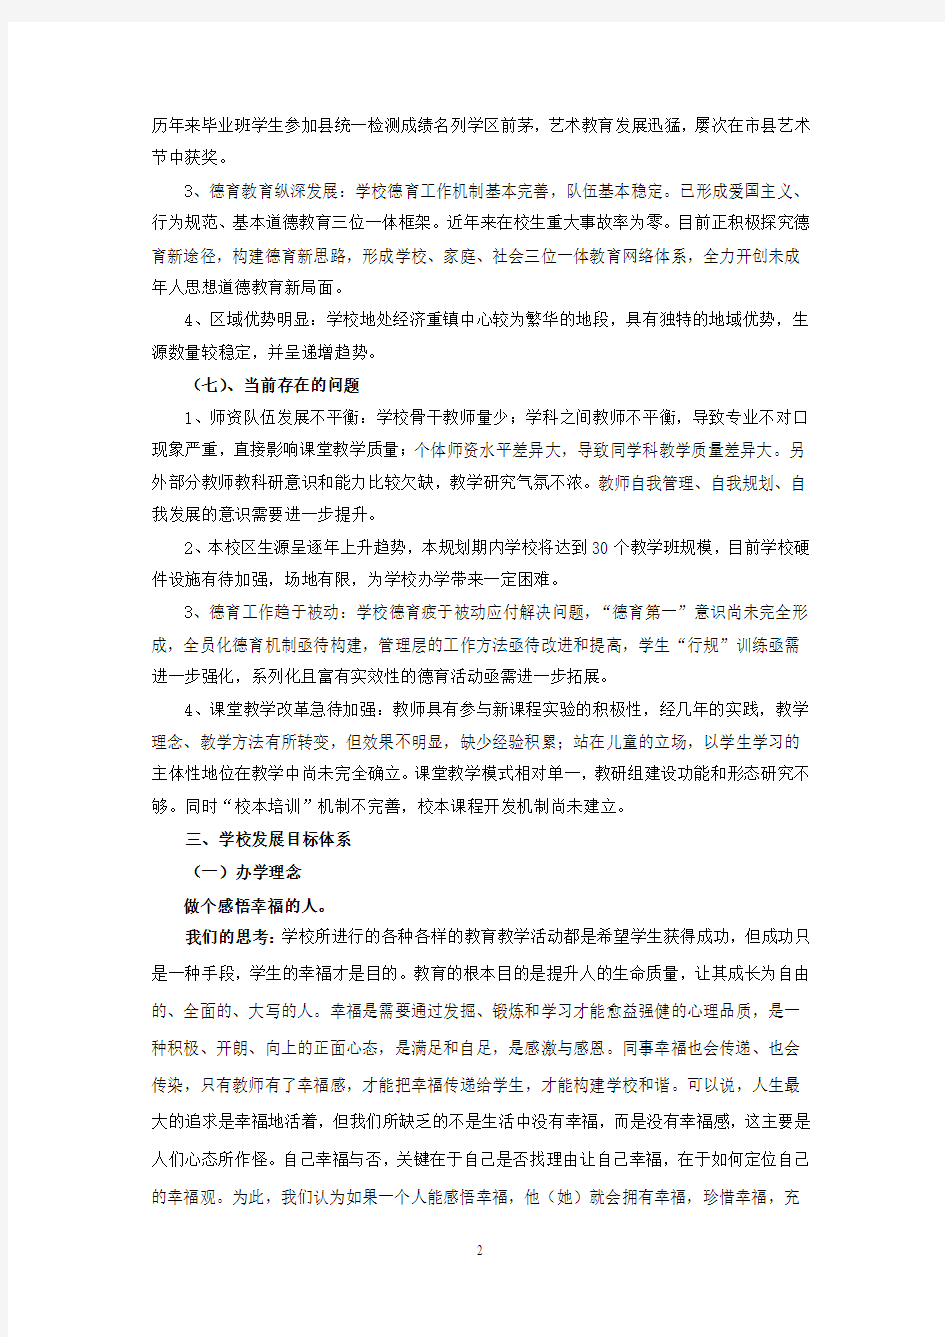 苍南县龙港镇第八小学发展性评价三年发展规 2